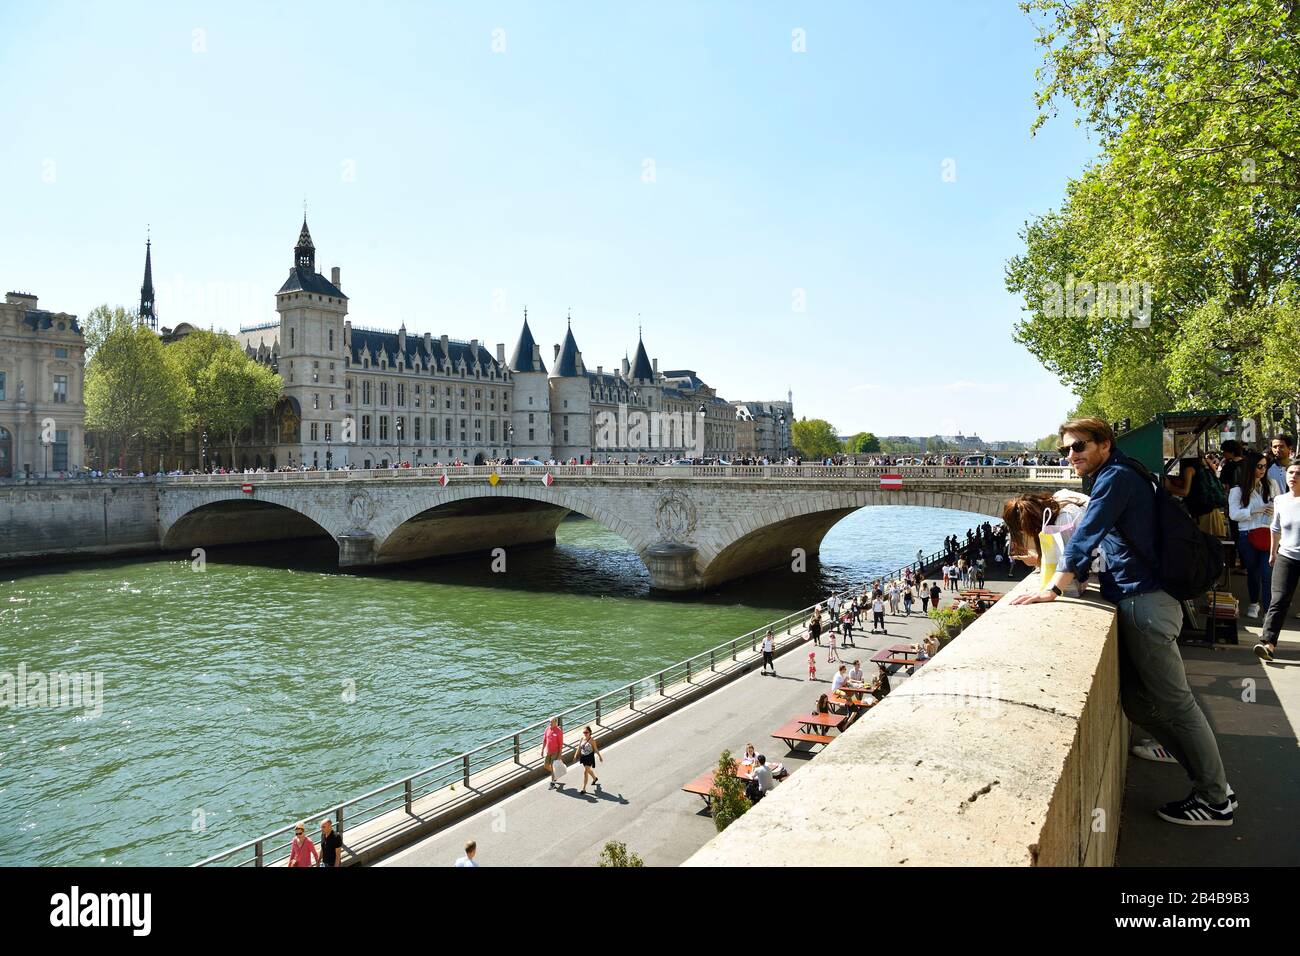 France, Paris, classée au patrimoine mondial par l'UNESCO, les rives de la Seine, la Conciergerie sur l'Ile de la Cité (île de la Ville) et le pont au change (pont de changement) Banque D'Images